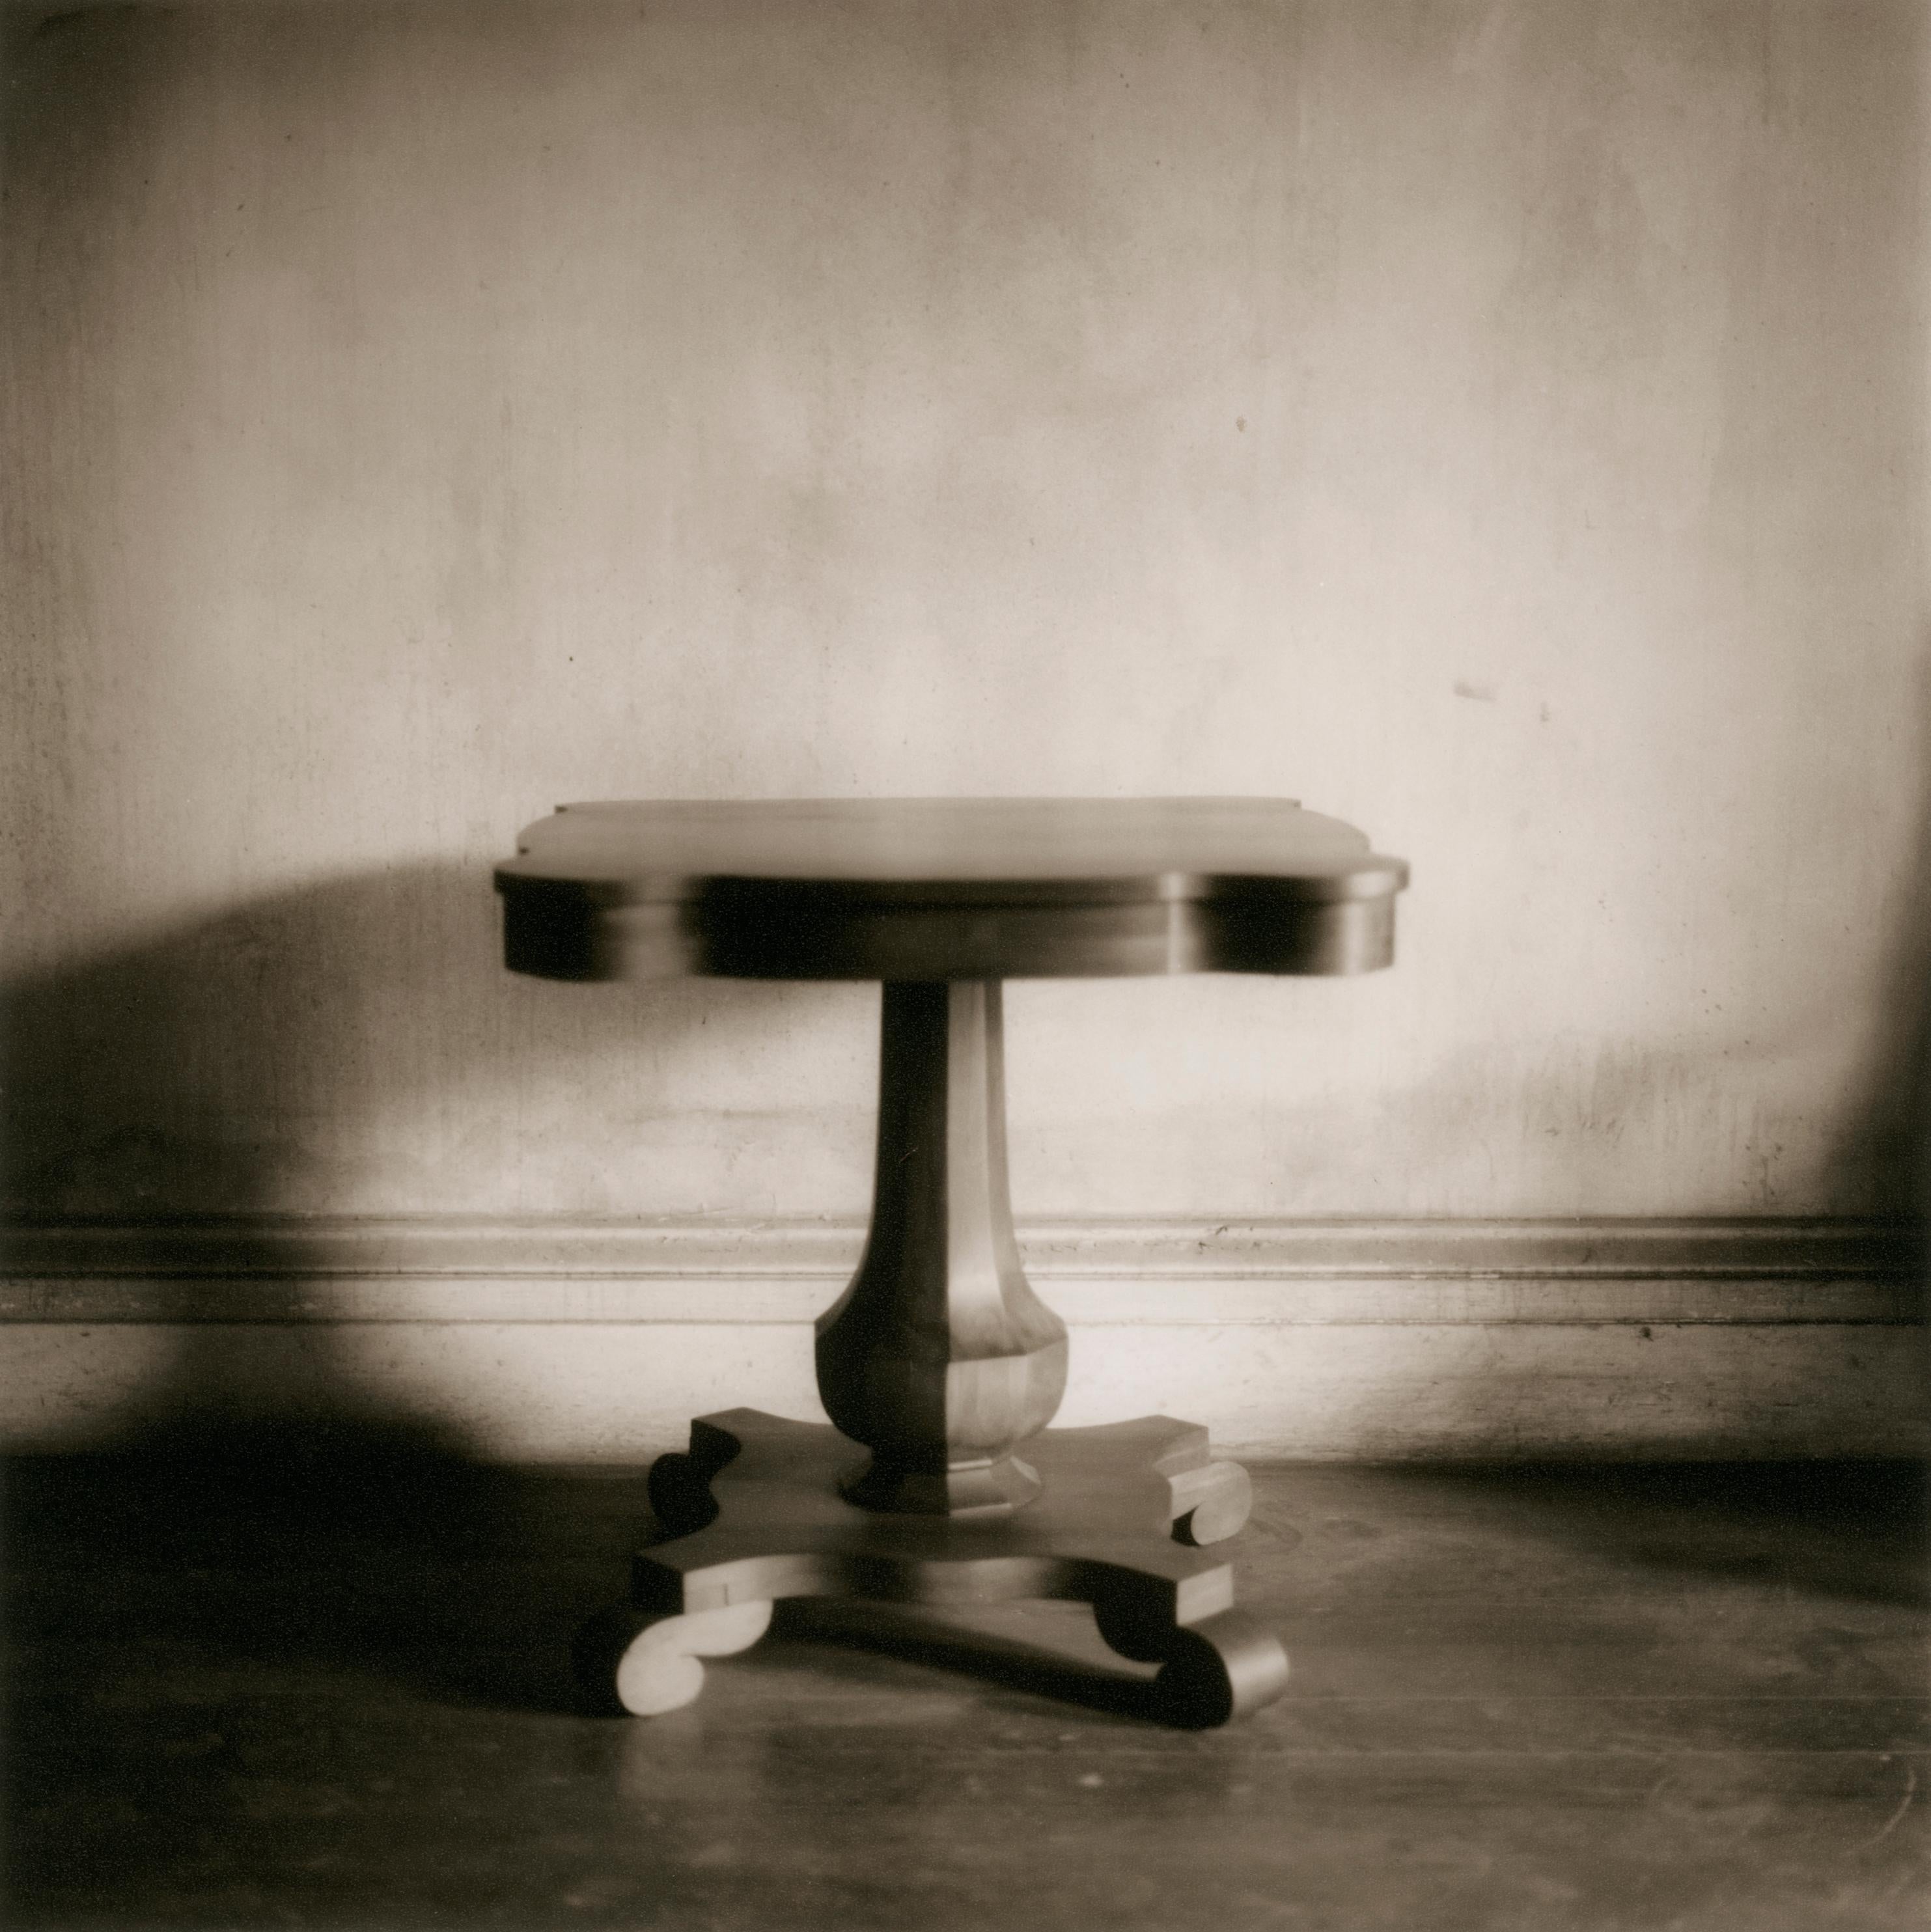 Still-Life Photograph David Halliday - Table carrée (photographie contemporaine de nature morte sépia de table ancienne)